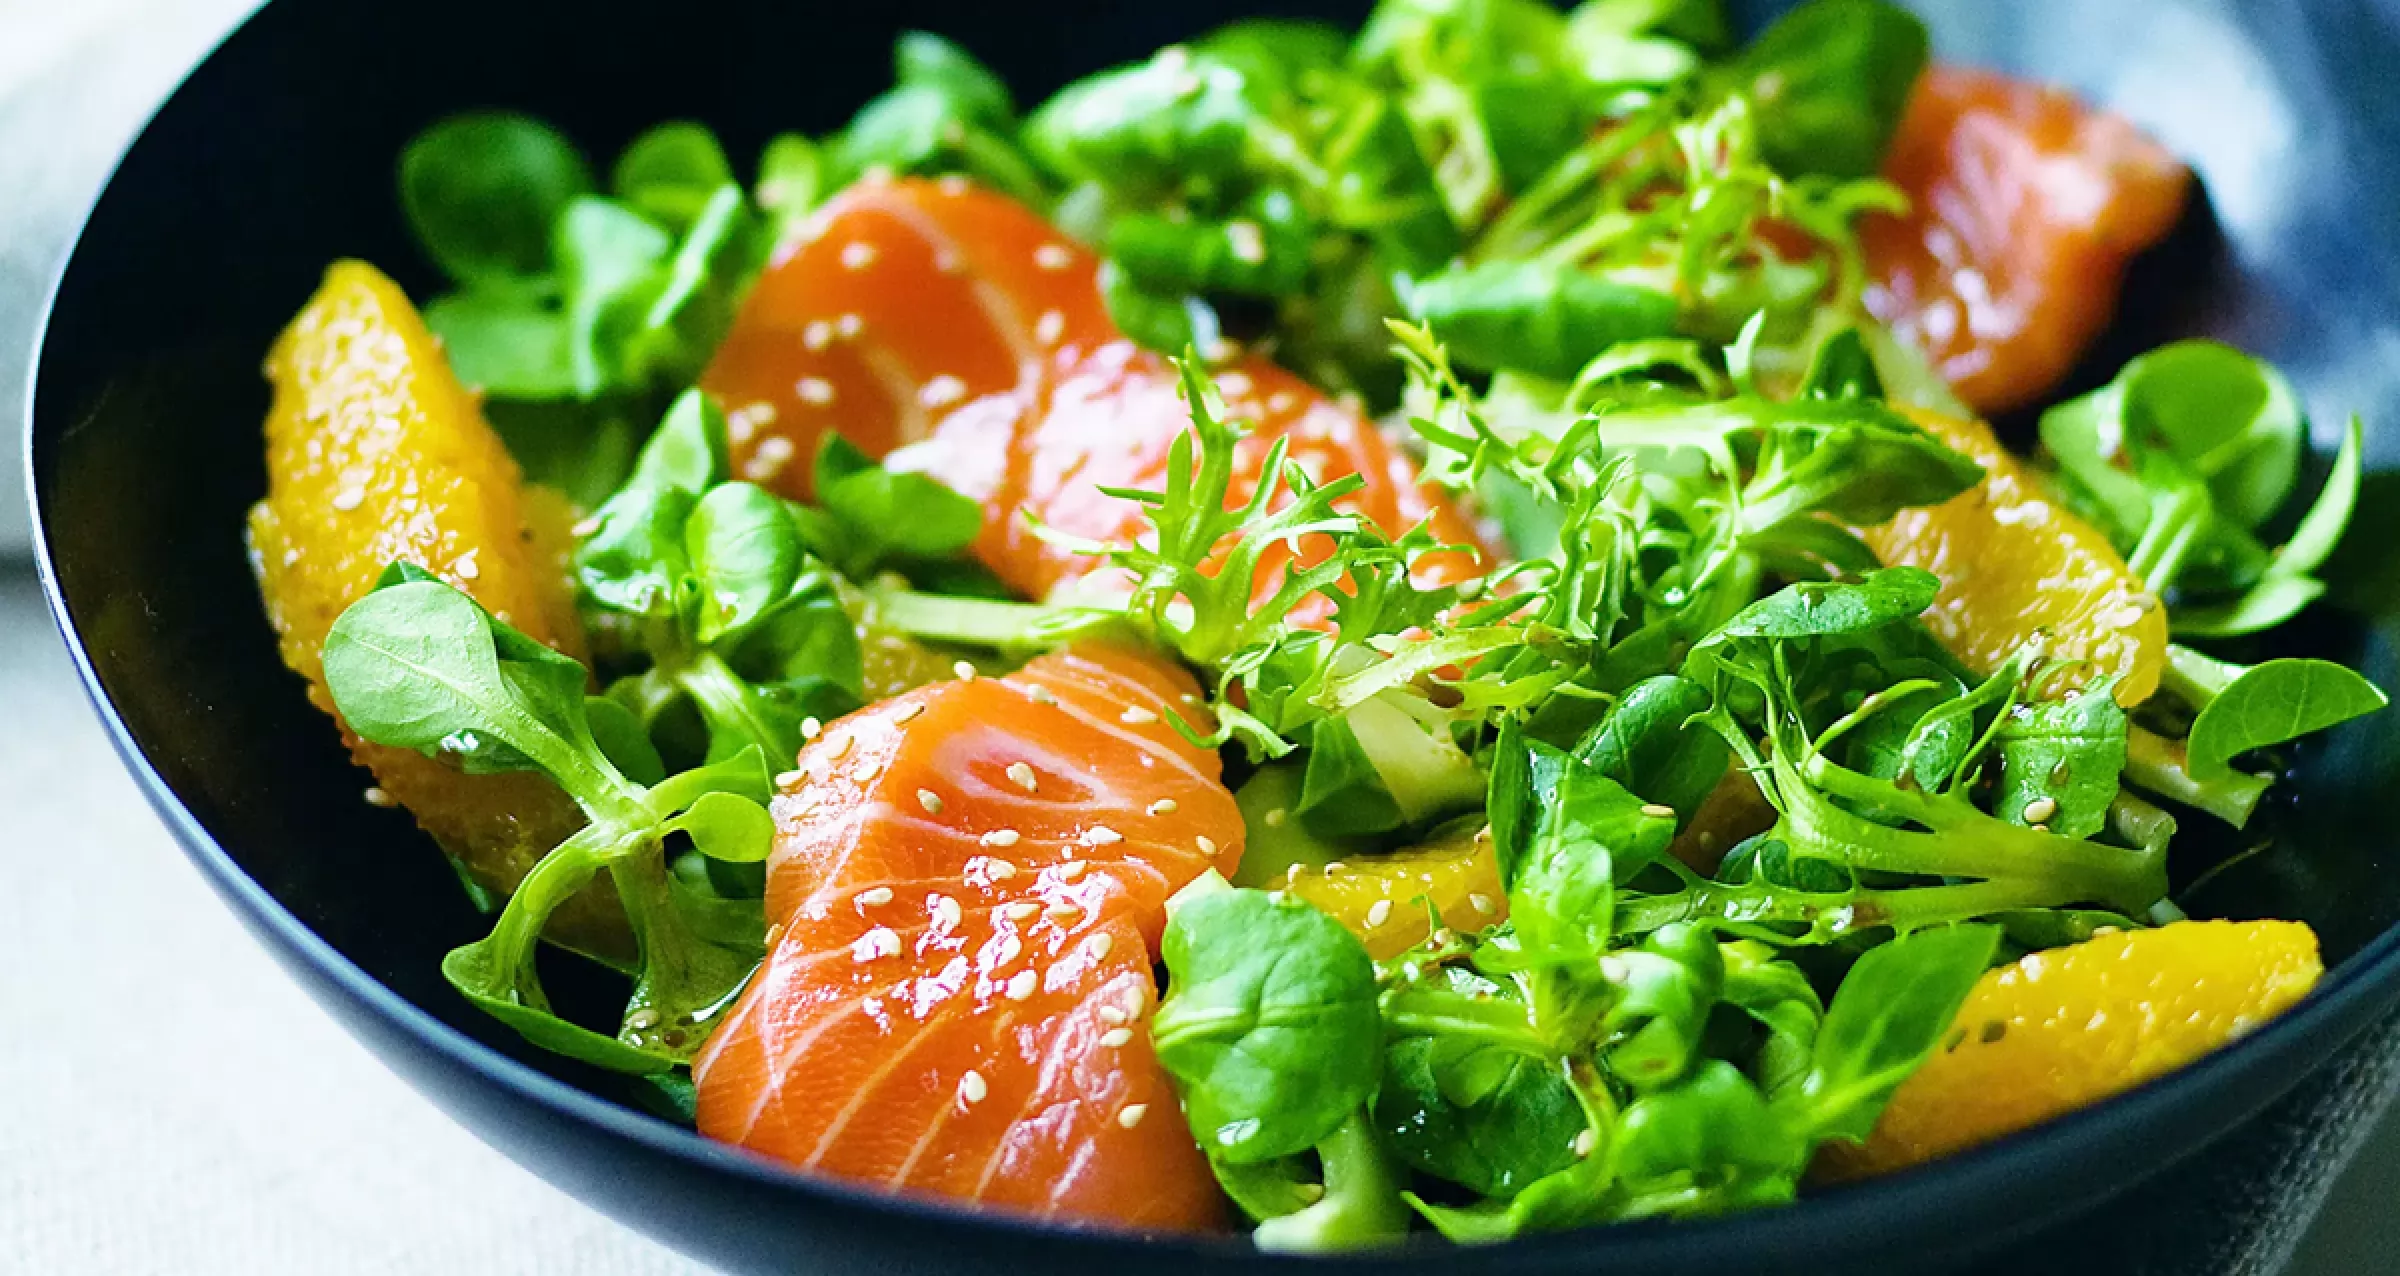 Салат из свежих овощей с соевым соусом